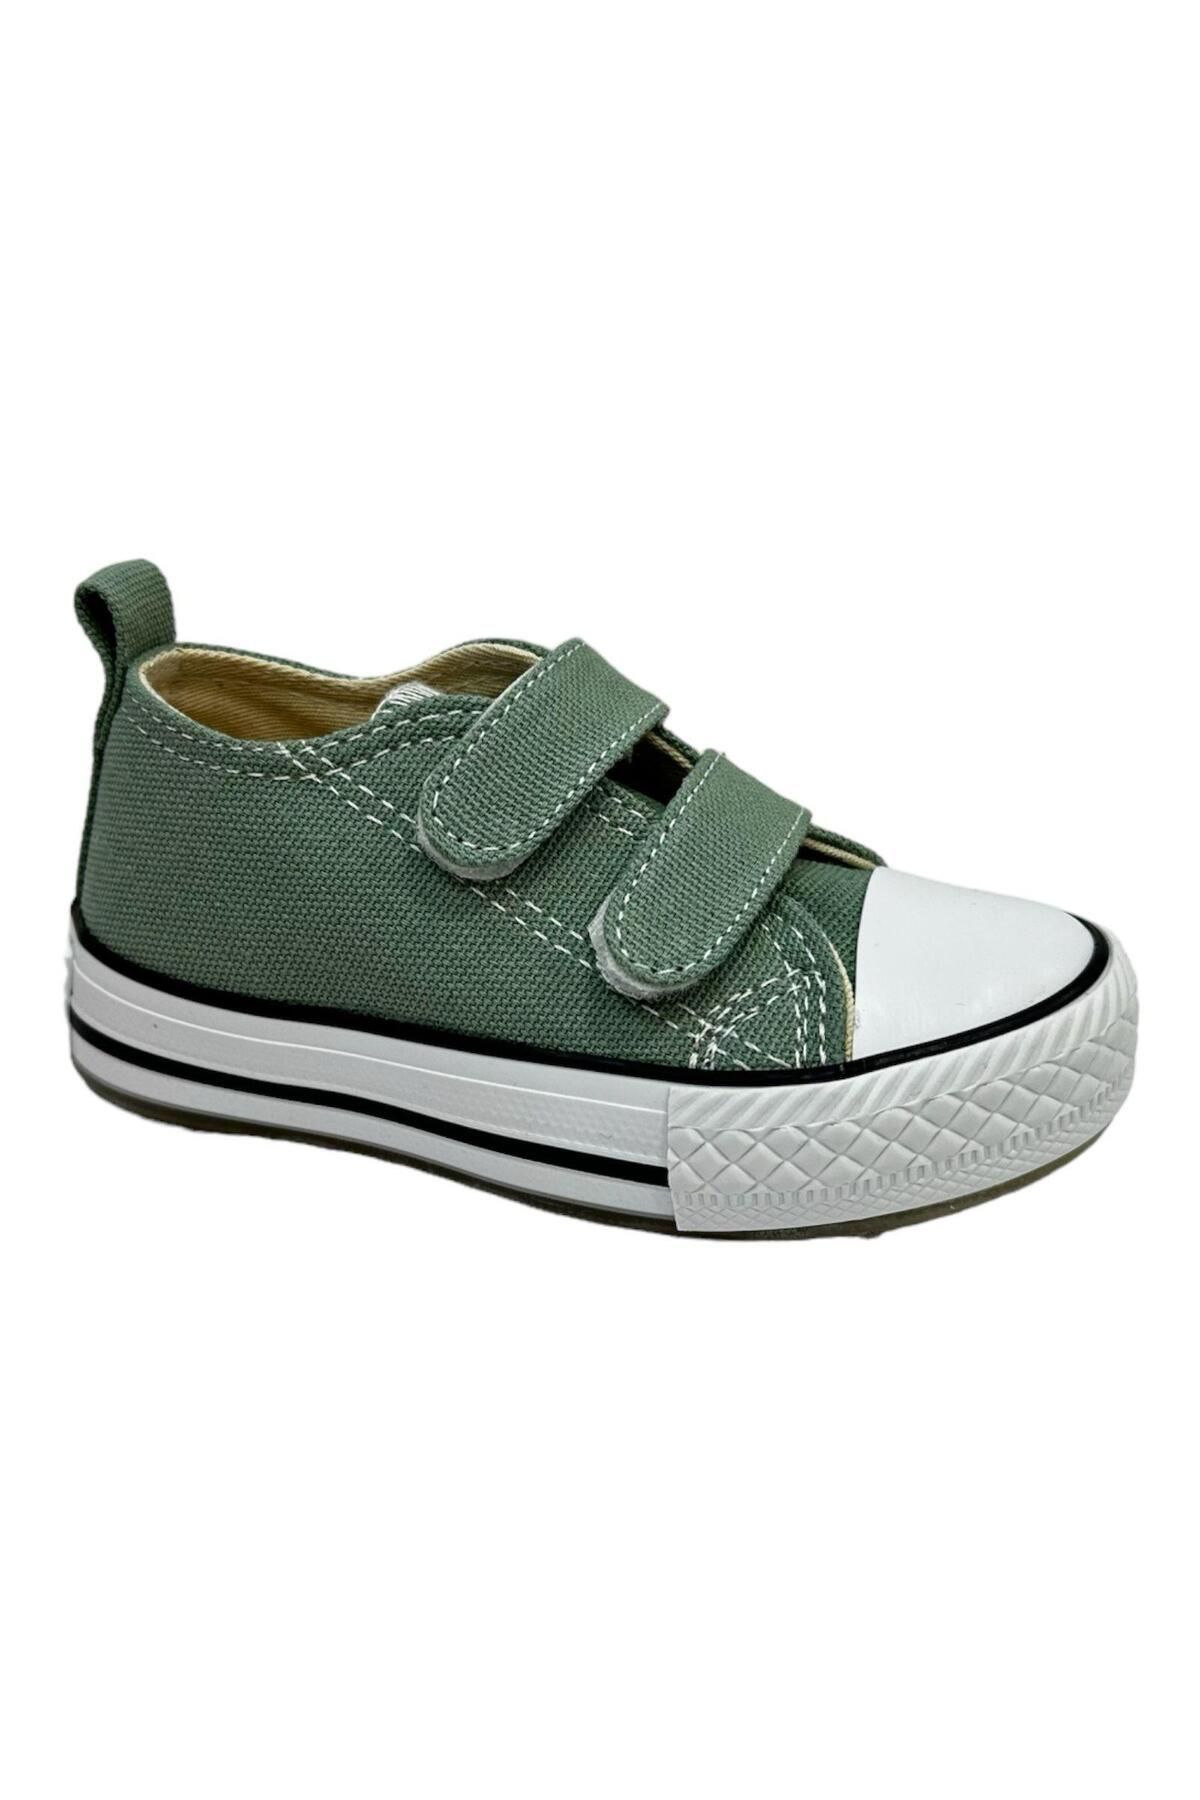 Vicco Pino Bebe Işıklı Keten Ayakkabı Yeşil